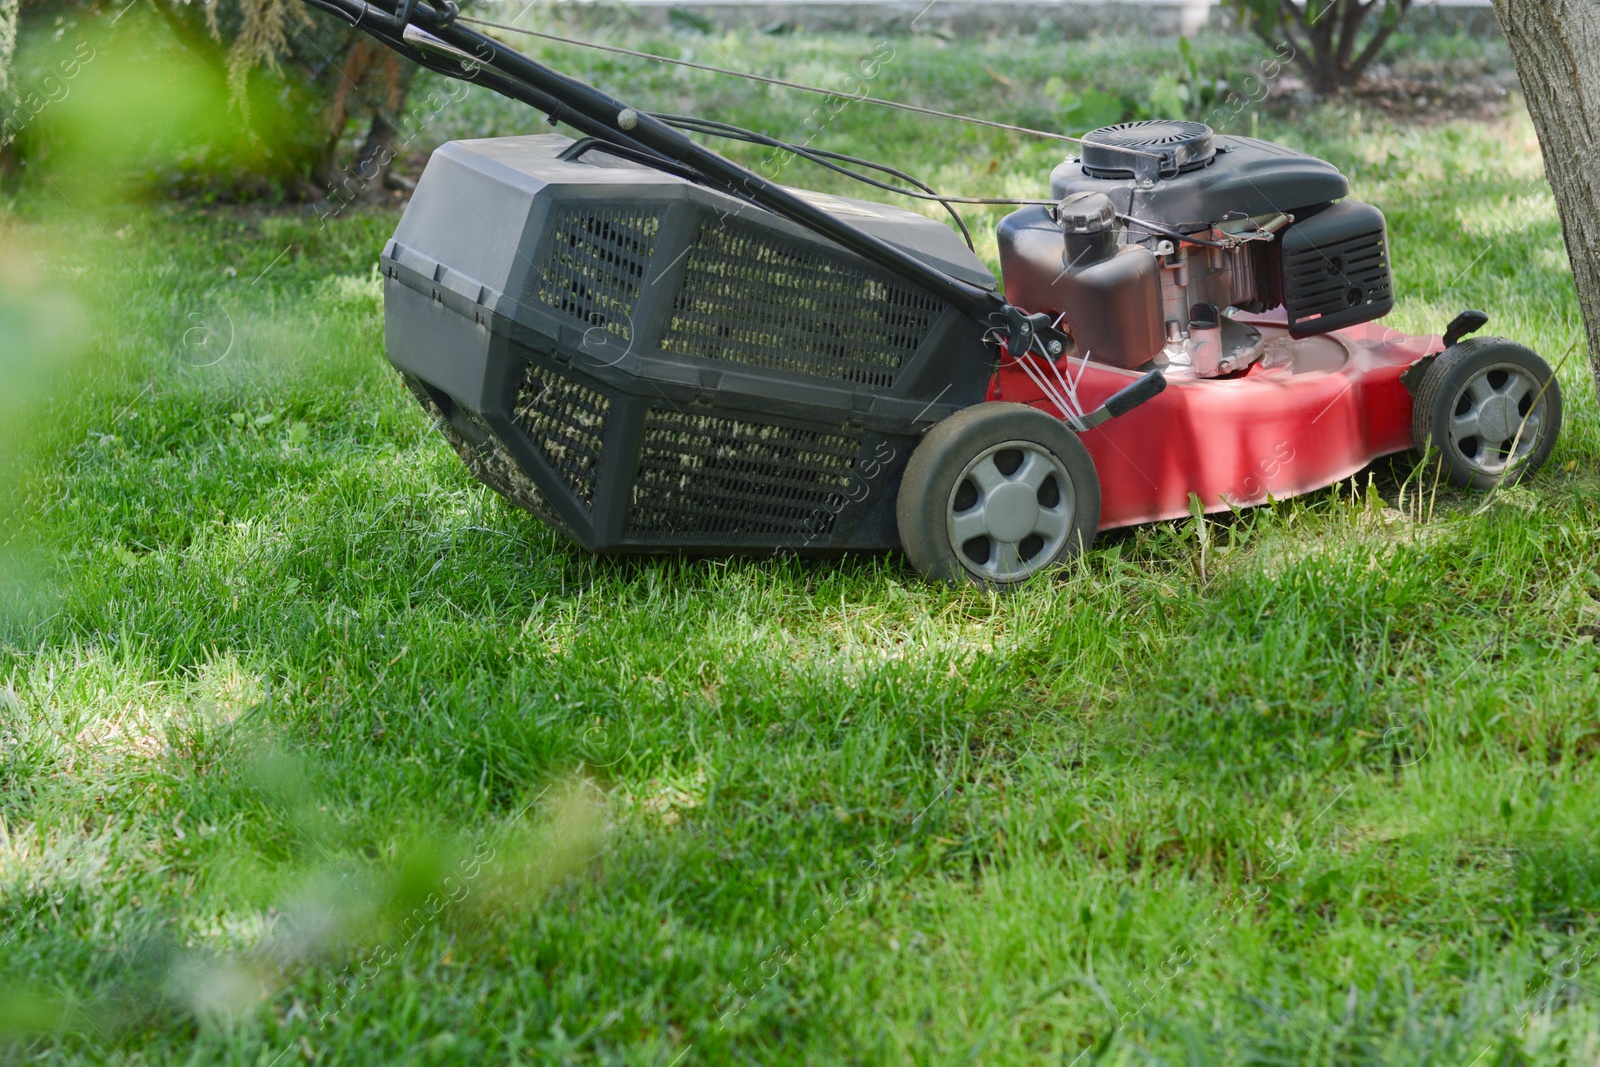 Photo of Modern garden lawn mower cutting green grass outdoors